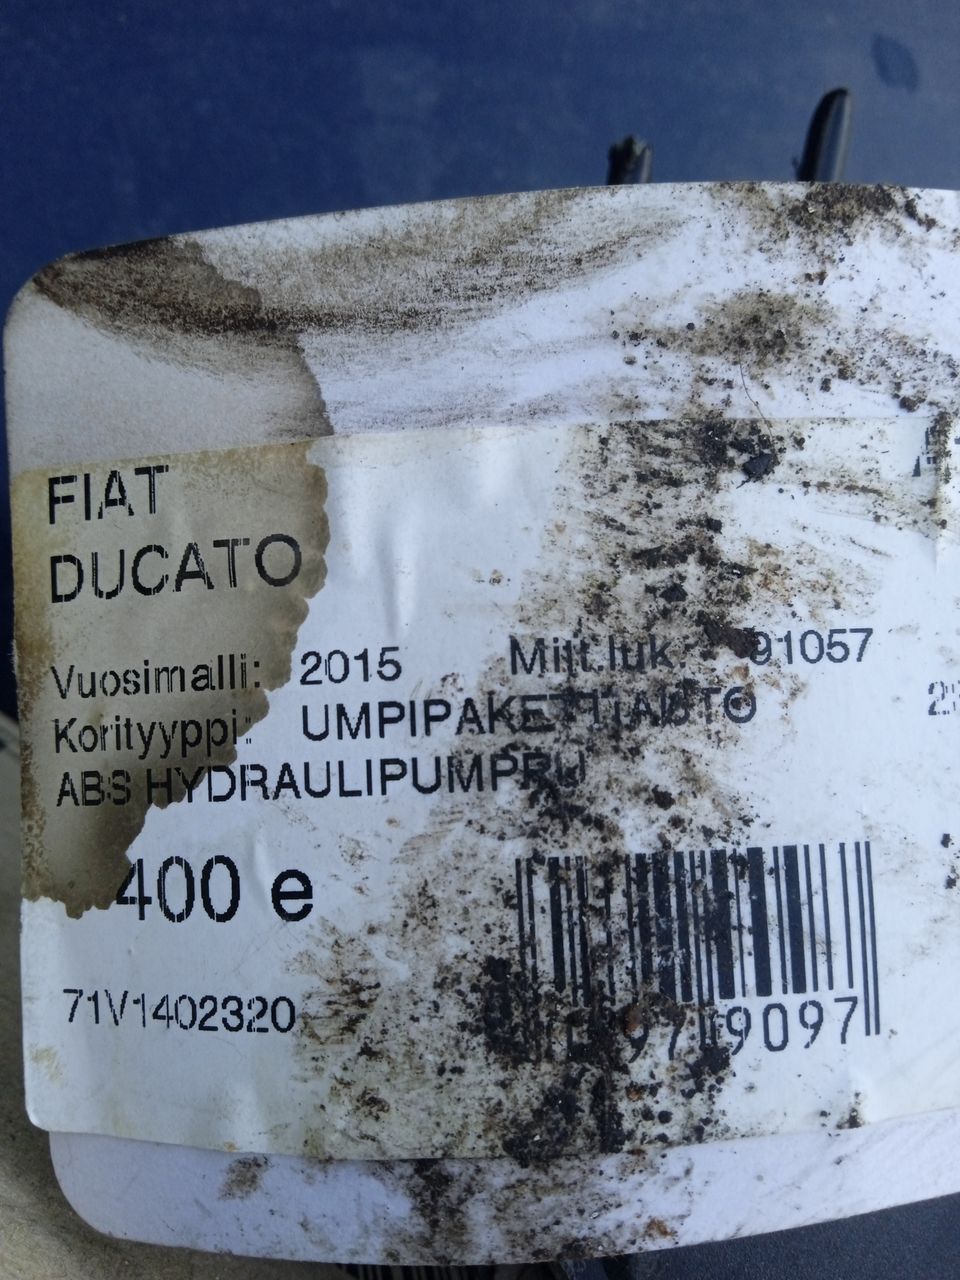 Abs hydrauliyksikkö ducato 2015